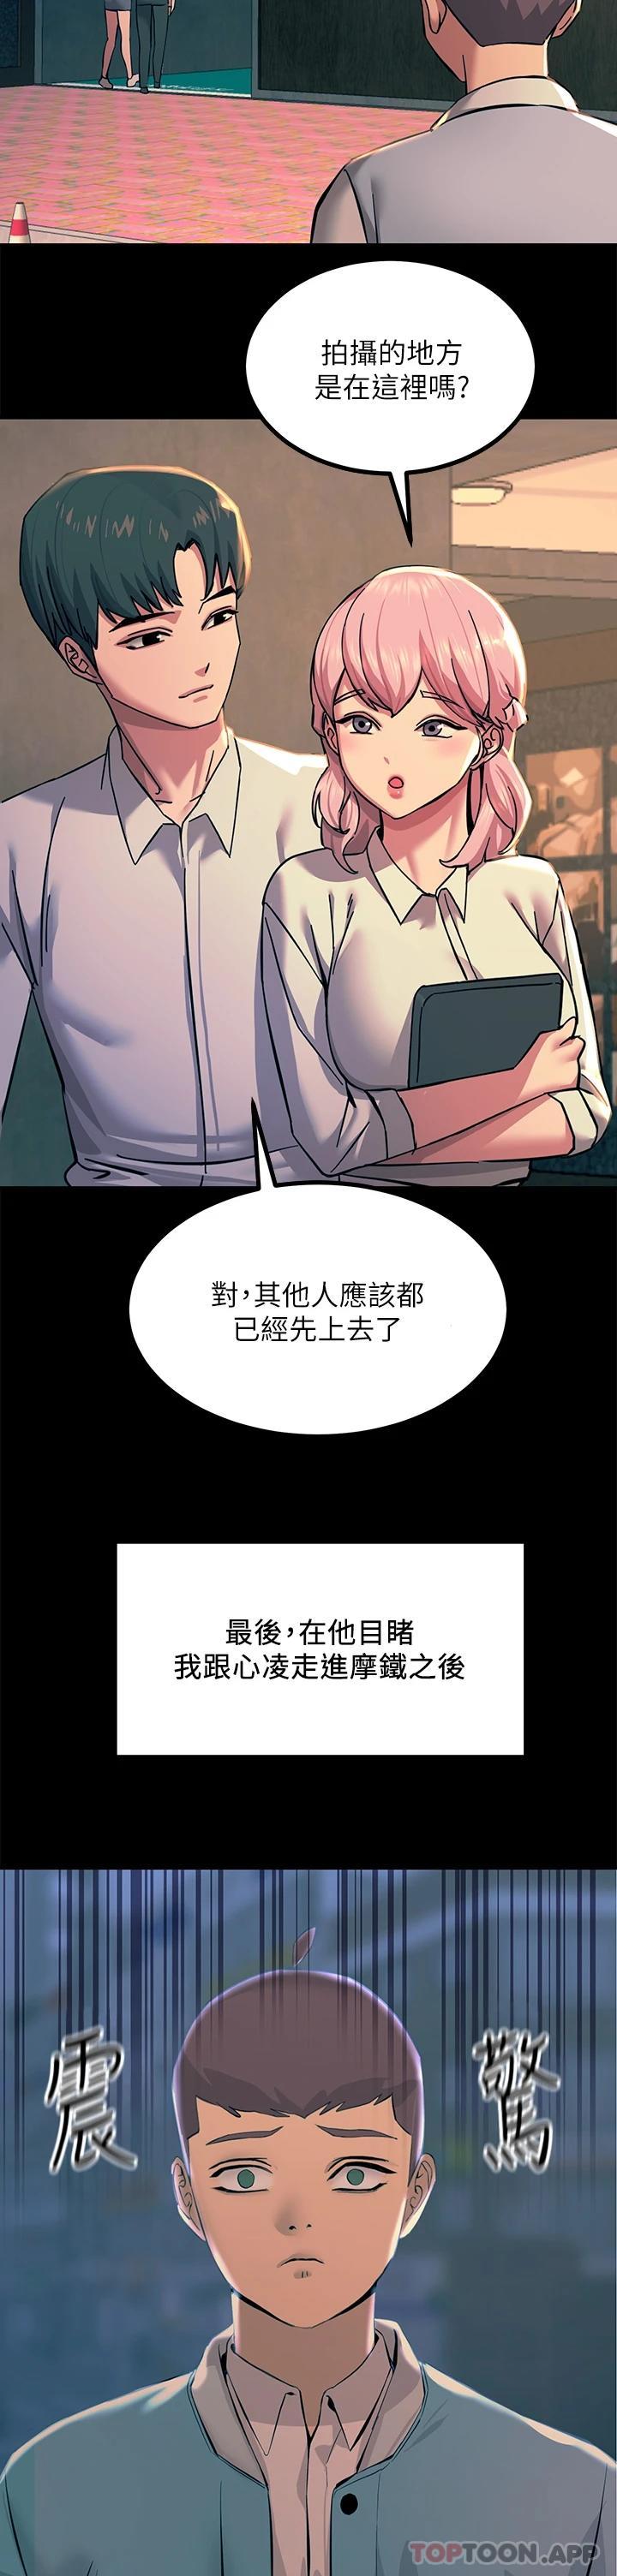 韩国污漫画 觸電大師 第20话 用胸器按摩老二的饥渴母狗 52